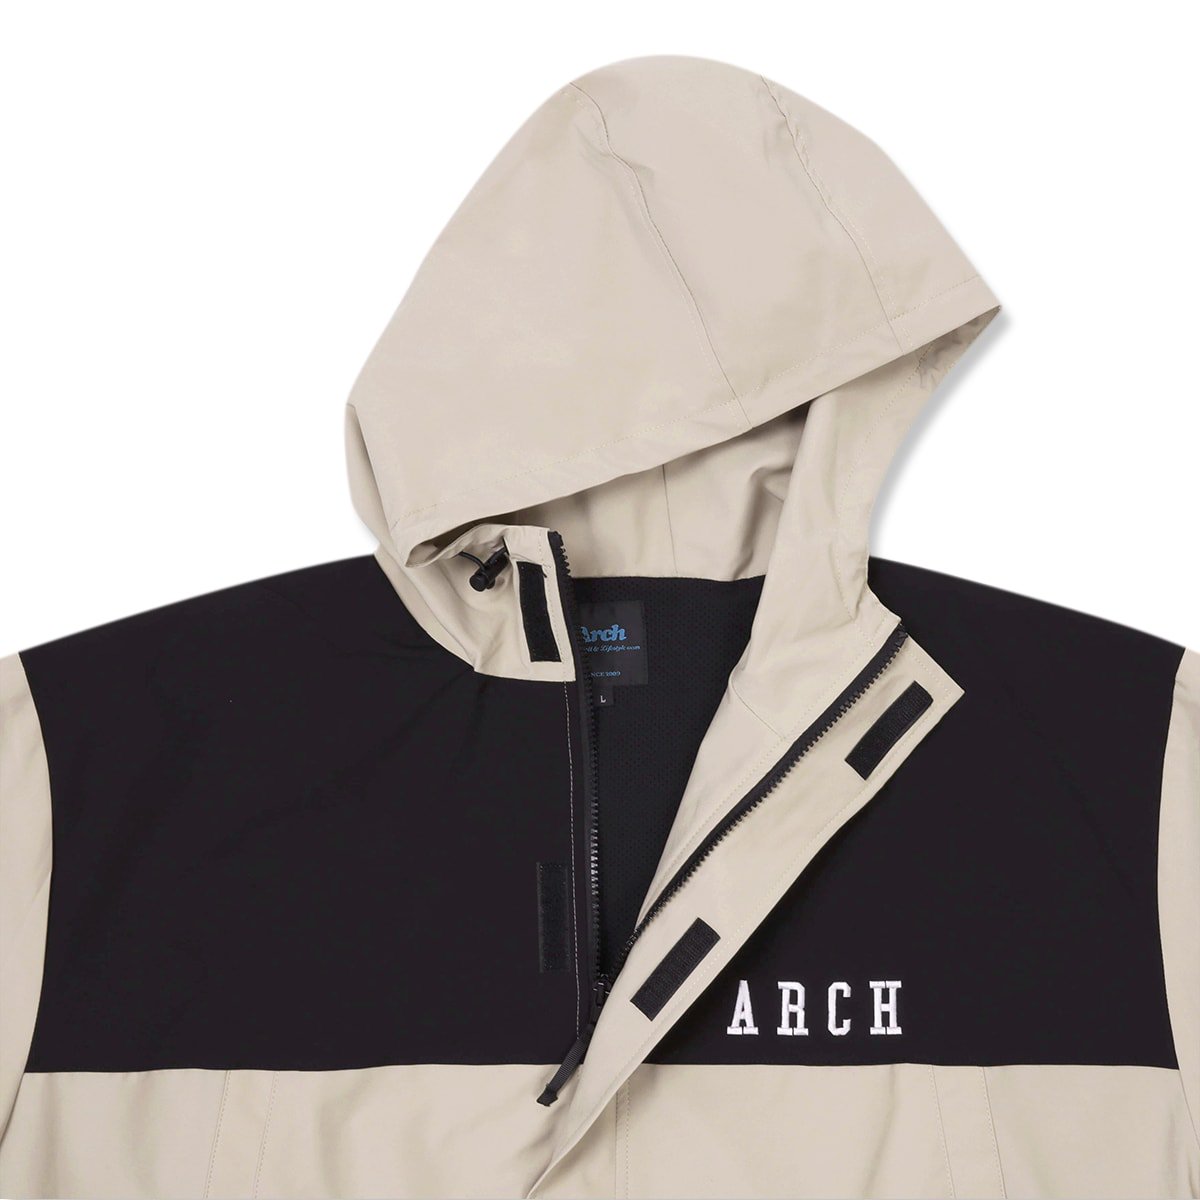 Arch transition paneled jacket T722-113 - バスケットボール